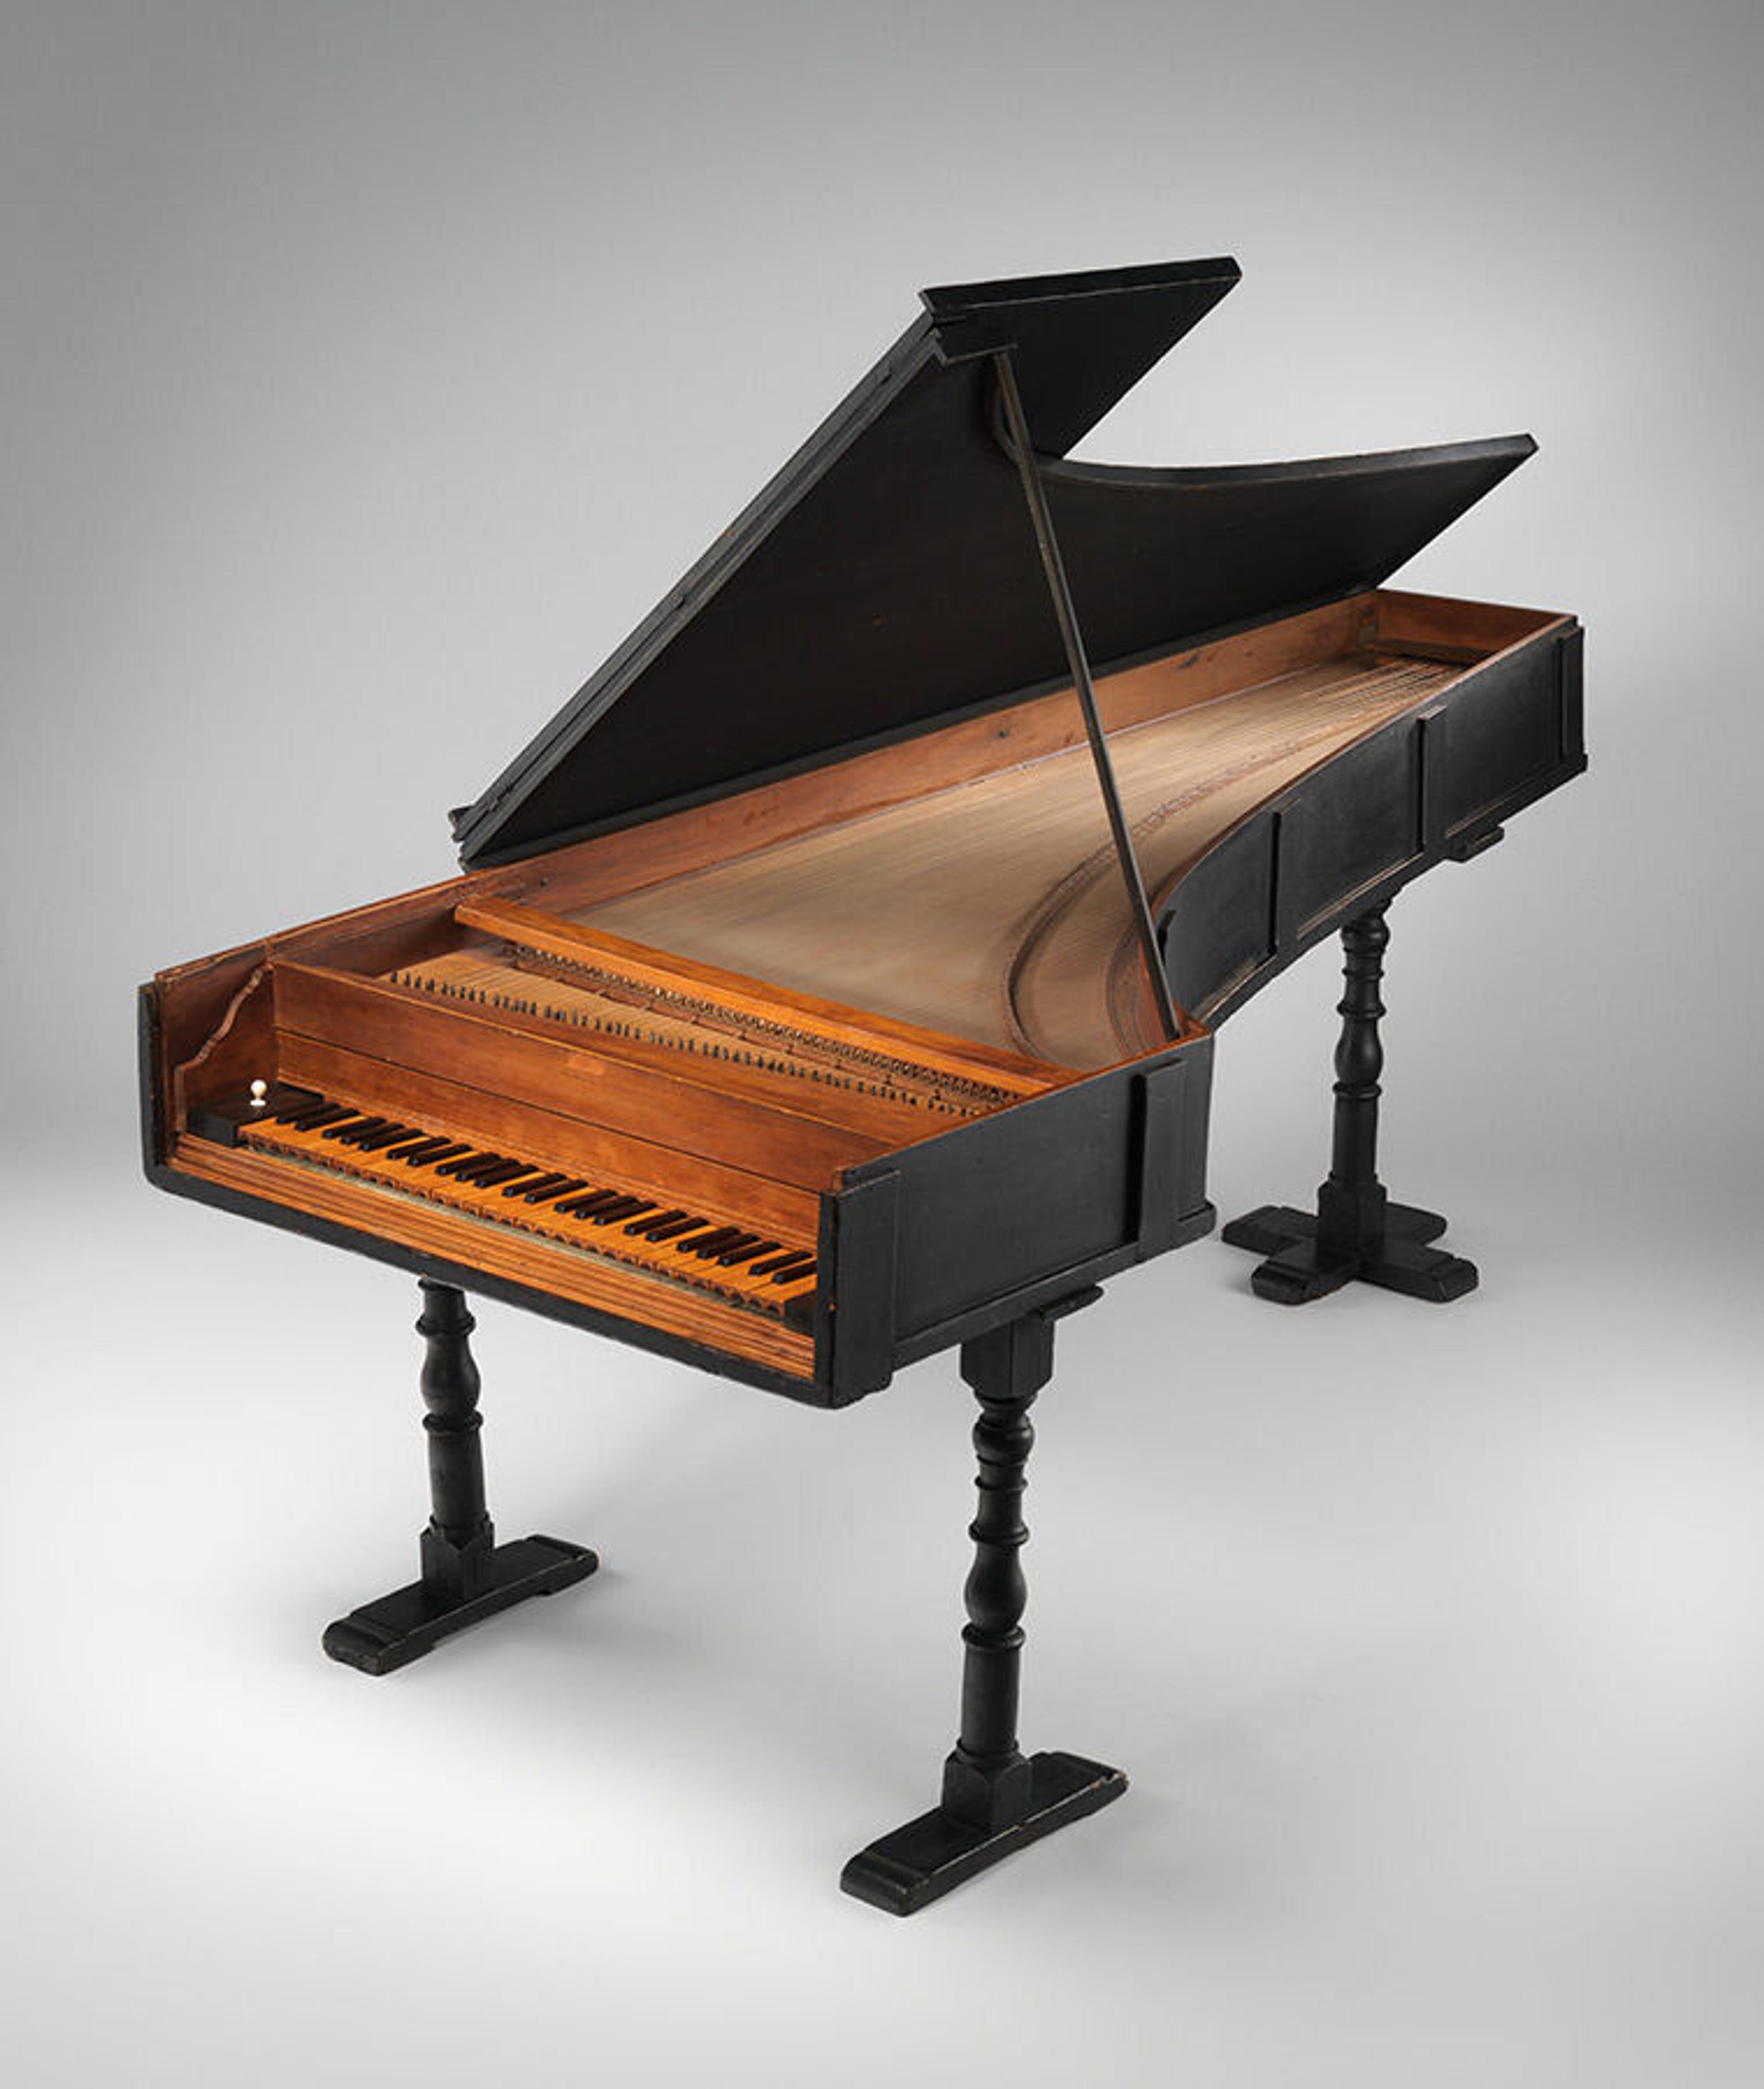 The Met's Cristofori piano